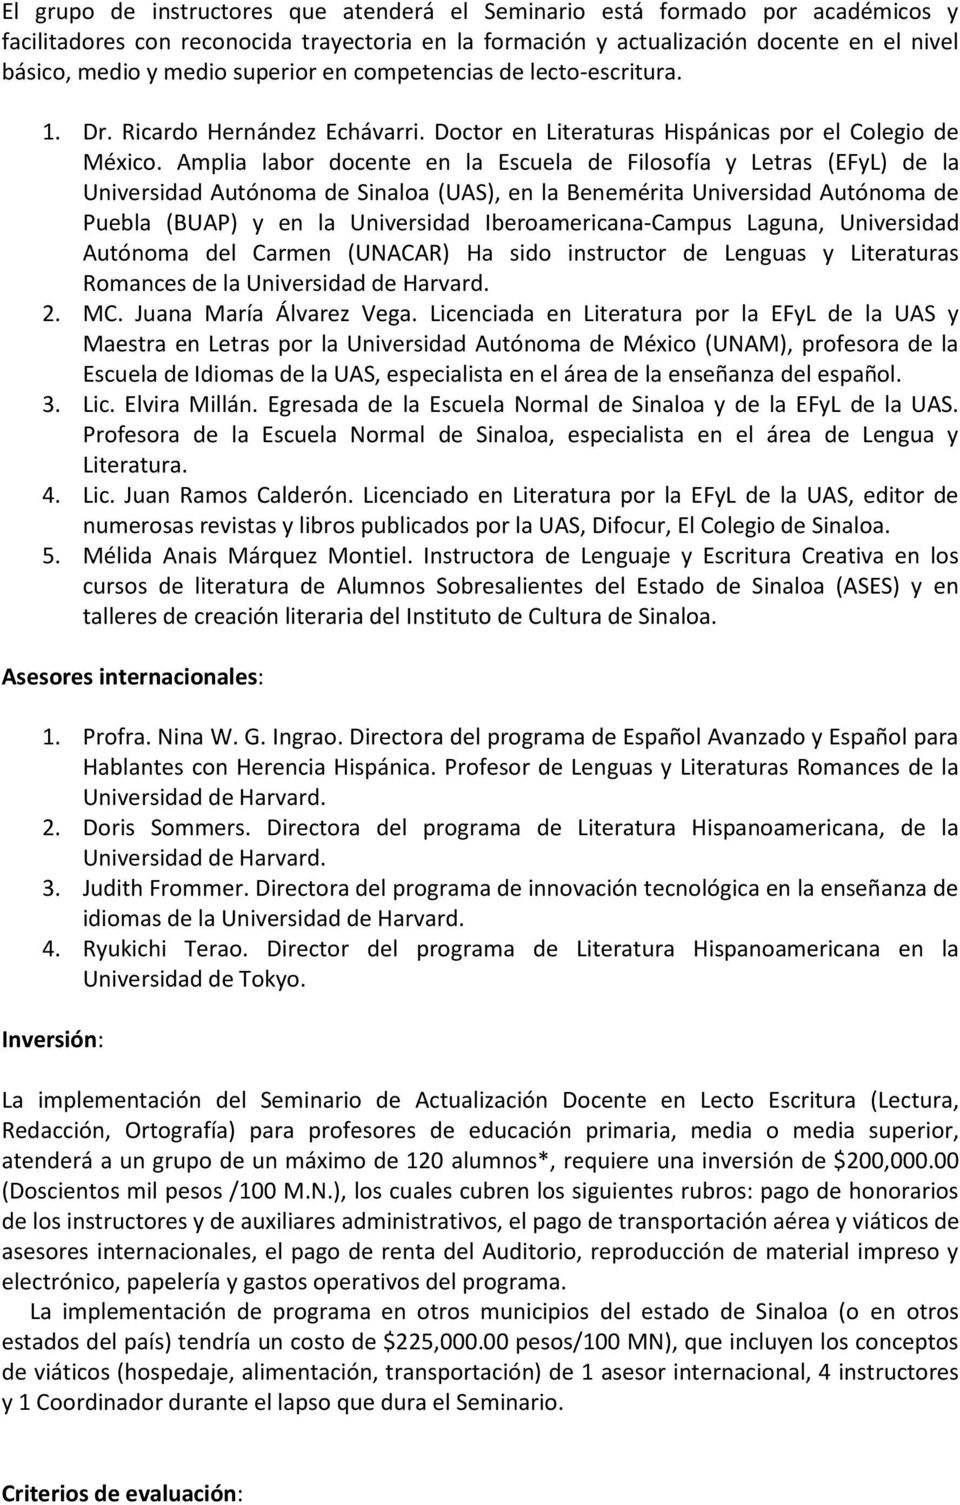 Amplia labor docente en la Escuela de Filosofía y Letras (EFyL) de la Universidad Autónoma de Sinaloa (UAS), en la Benemérita Universidad Autónoma de Puebla (BUAP) y en la Universidad